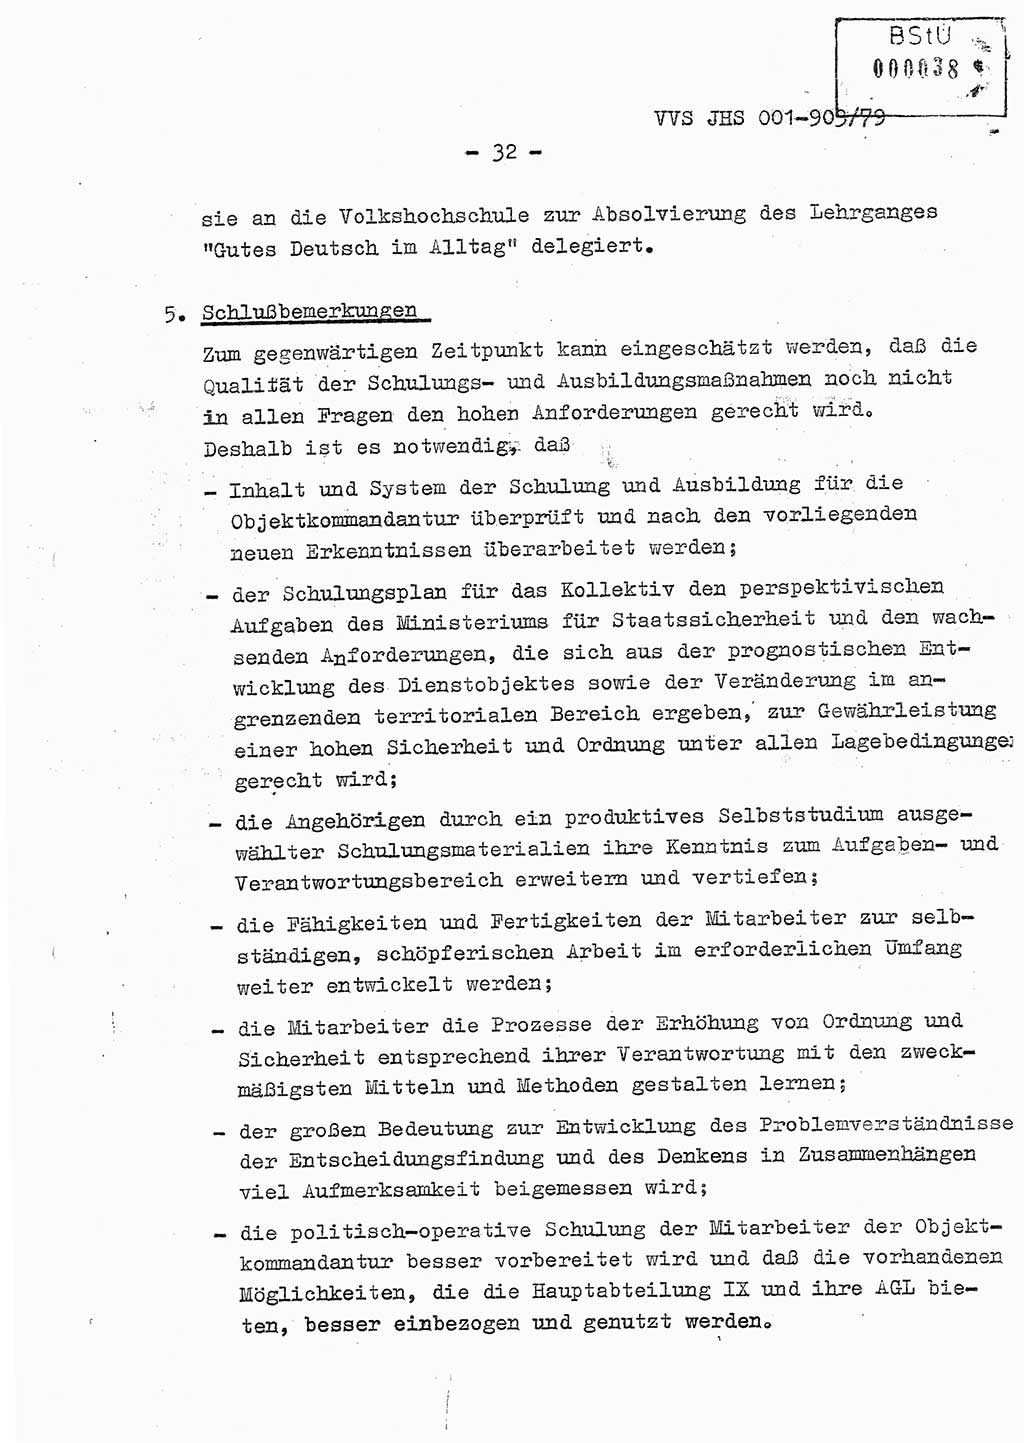 Fachschulabschlußarbeit Oberleutnant Jochen Pfeffer (HA Ⅸ/AGL), Ministerium für Staatssicherheit (MfS) [Deutsche Demokratische Republik (DDR)], Juristische Hochschule (JHS), Vertrauliche Verschlußsache (VVS) 001-903/79, Potsdam 1979, Seite 32 (FS-Abschl.-Arb. MfS DDR JHS VVS 001-903/79 1979, S. 32)